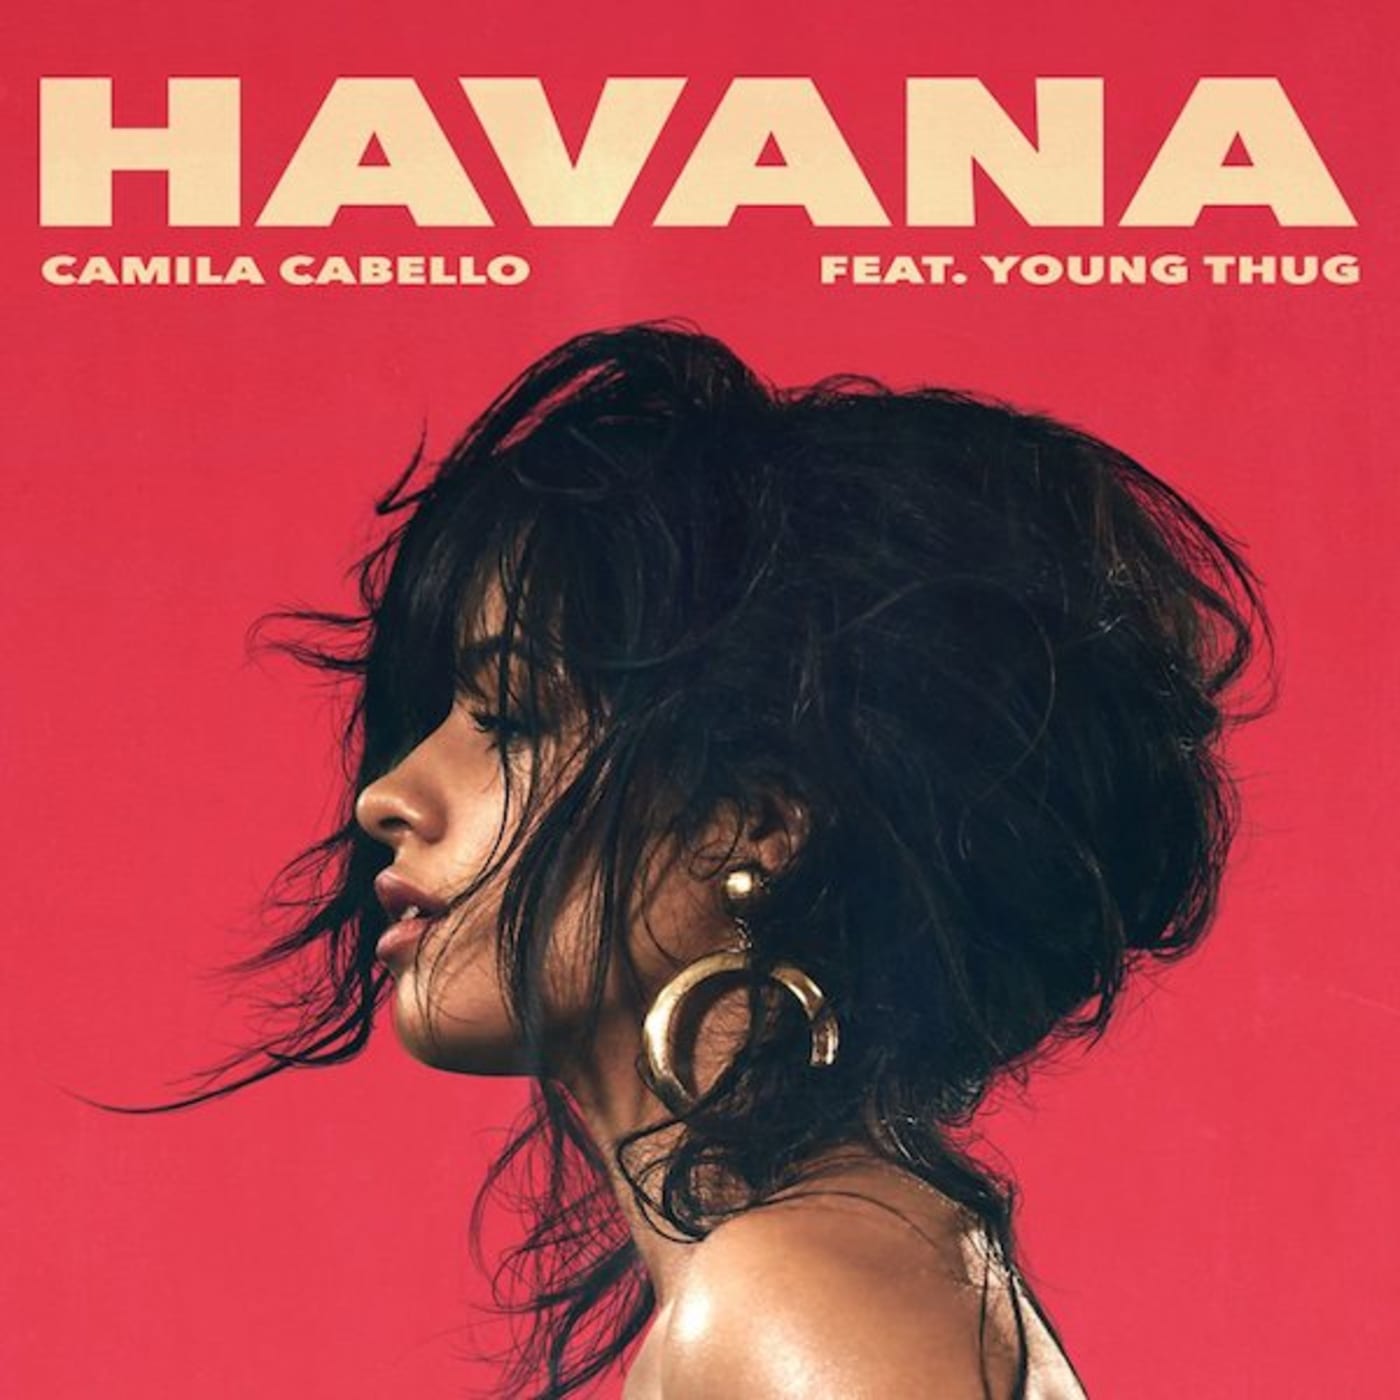 Camila Cabello "Havana" f/ Young Thug